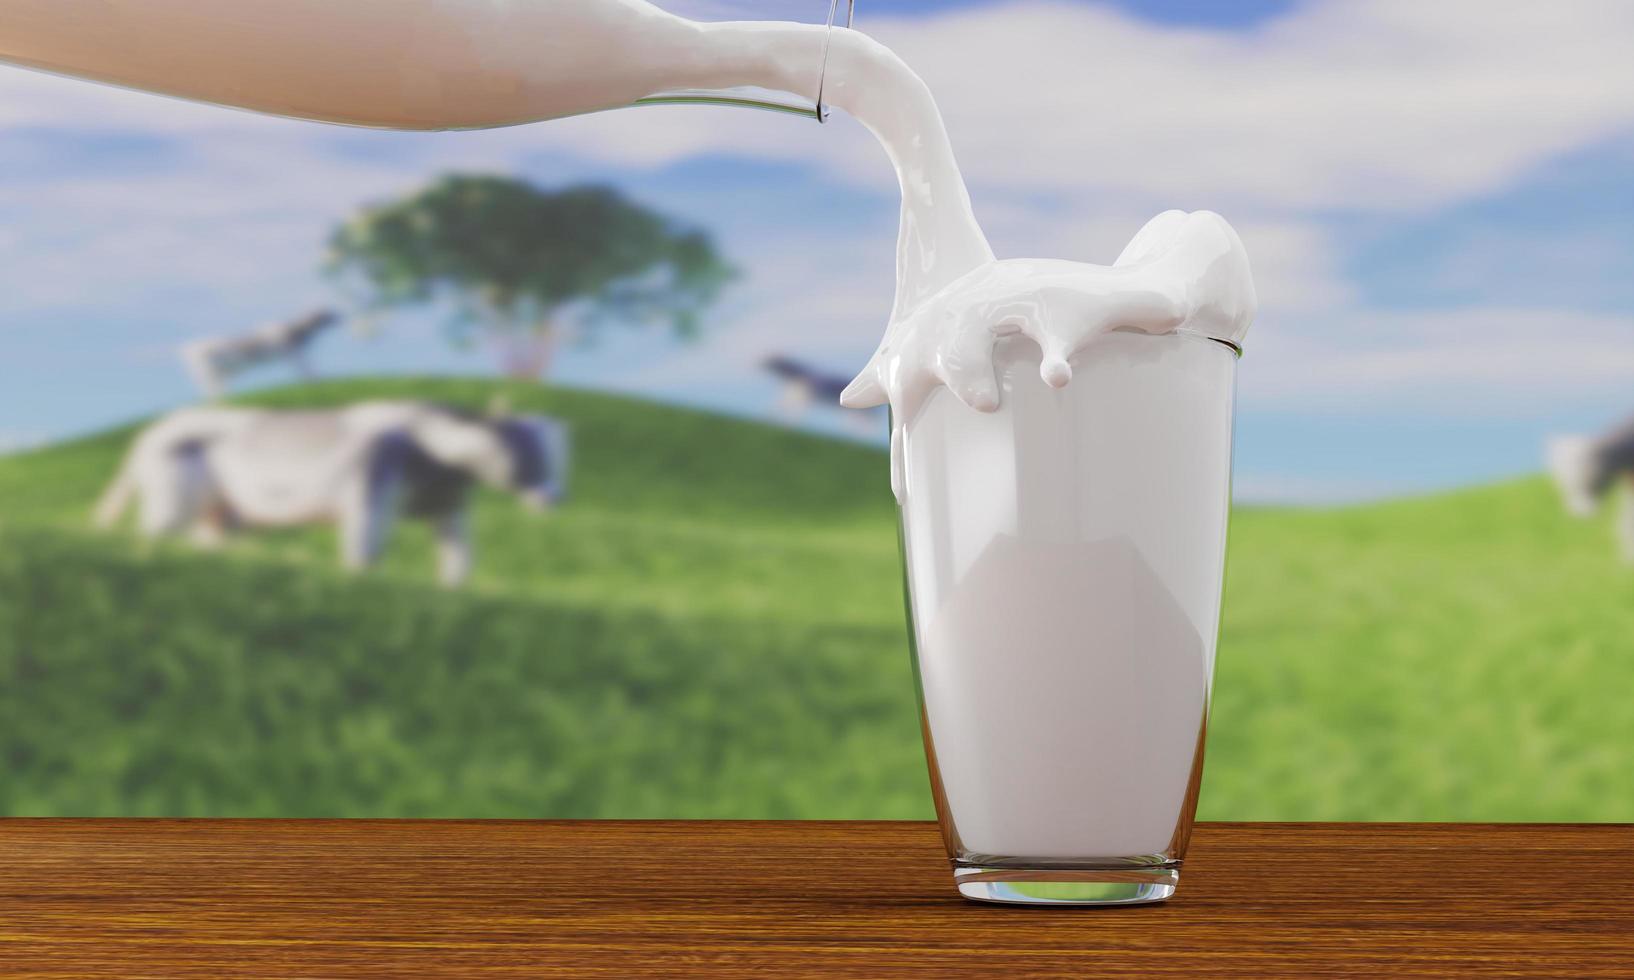 versez du lait frais dans une bouteille en verre transparent. verser le lait débordant sur une table au sol en bois. l'arrière-plan est un vaste champ avec des vaches laitières marchant. rendu 3d. photo